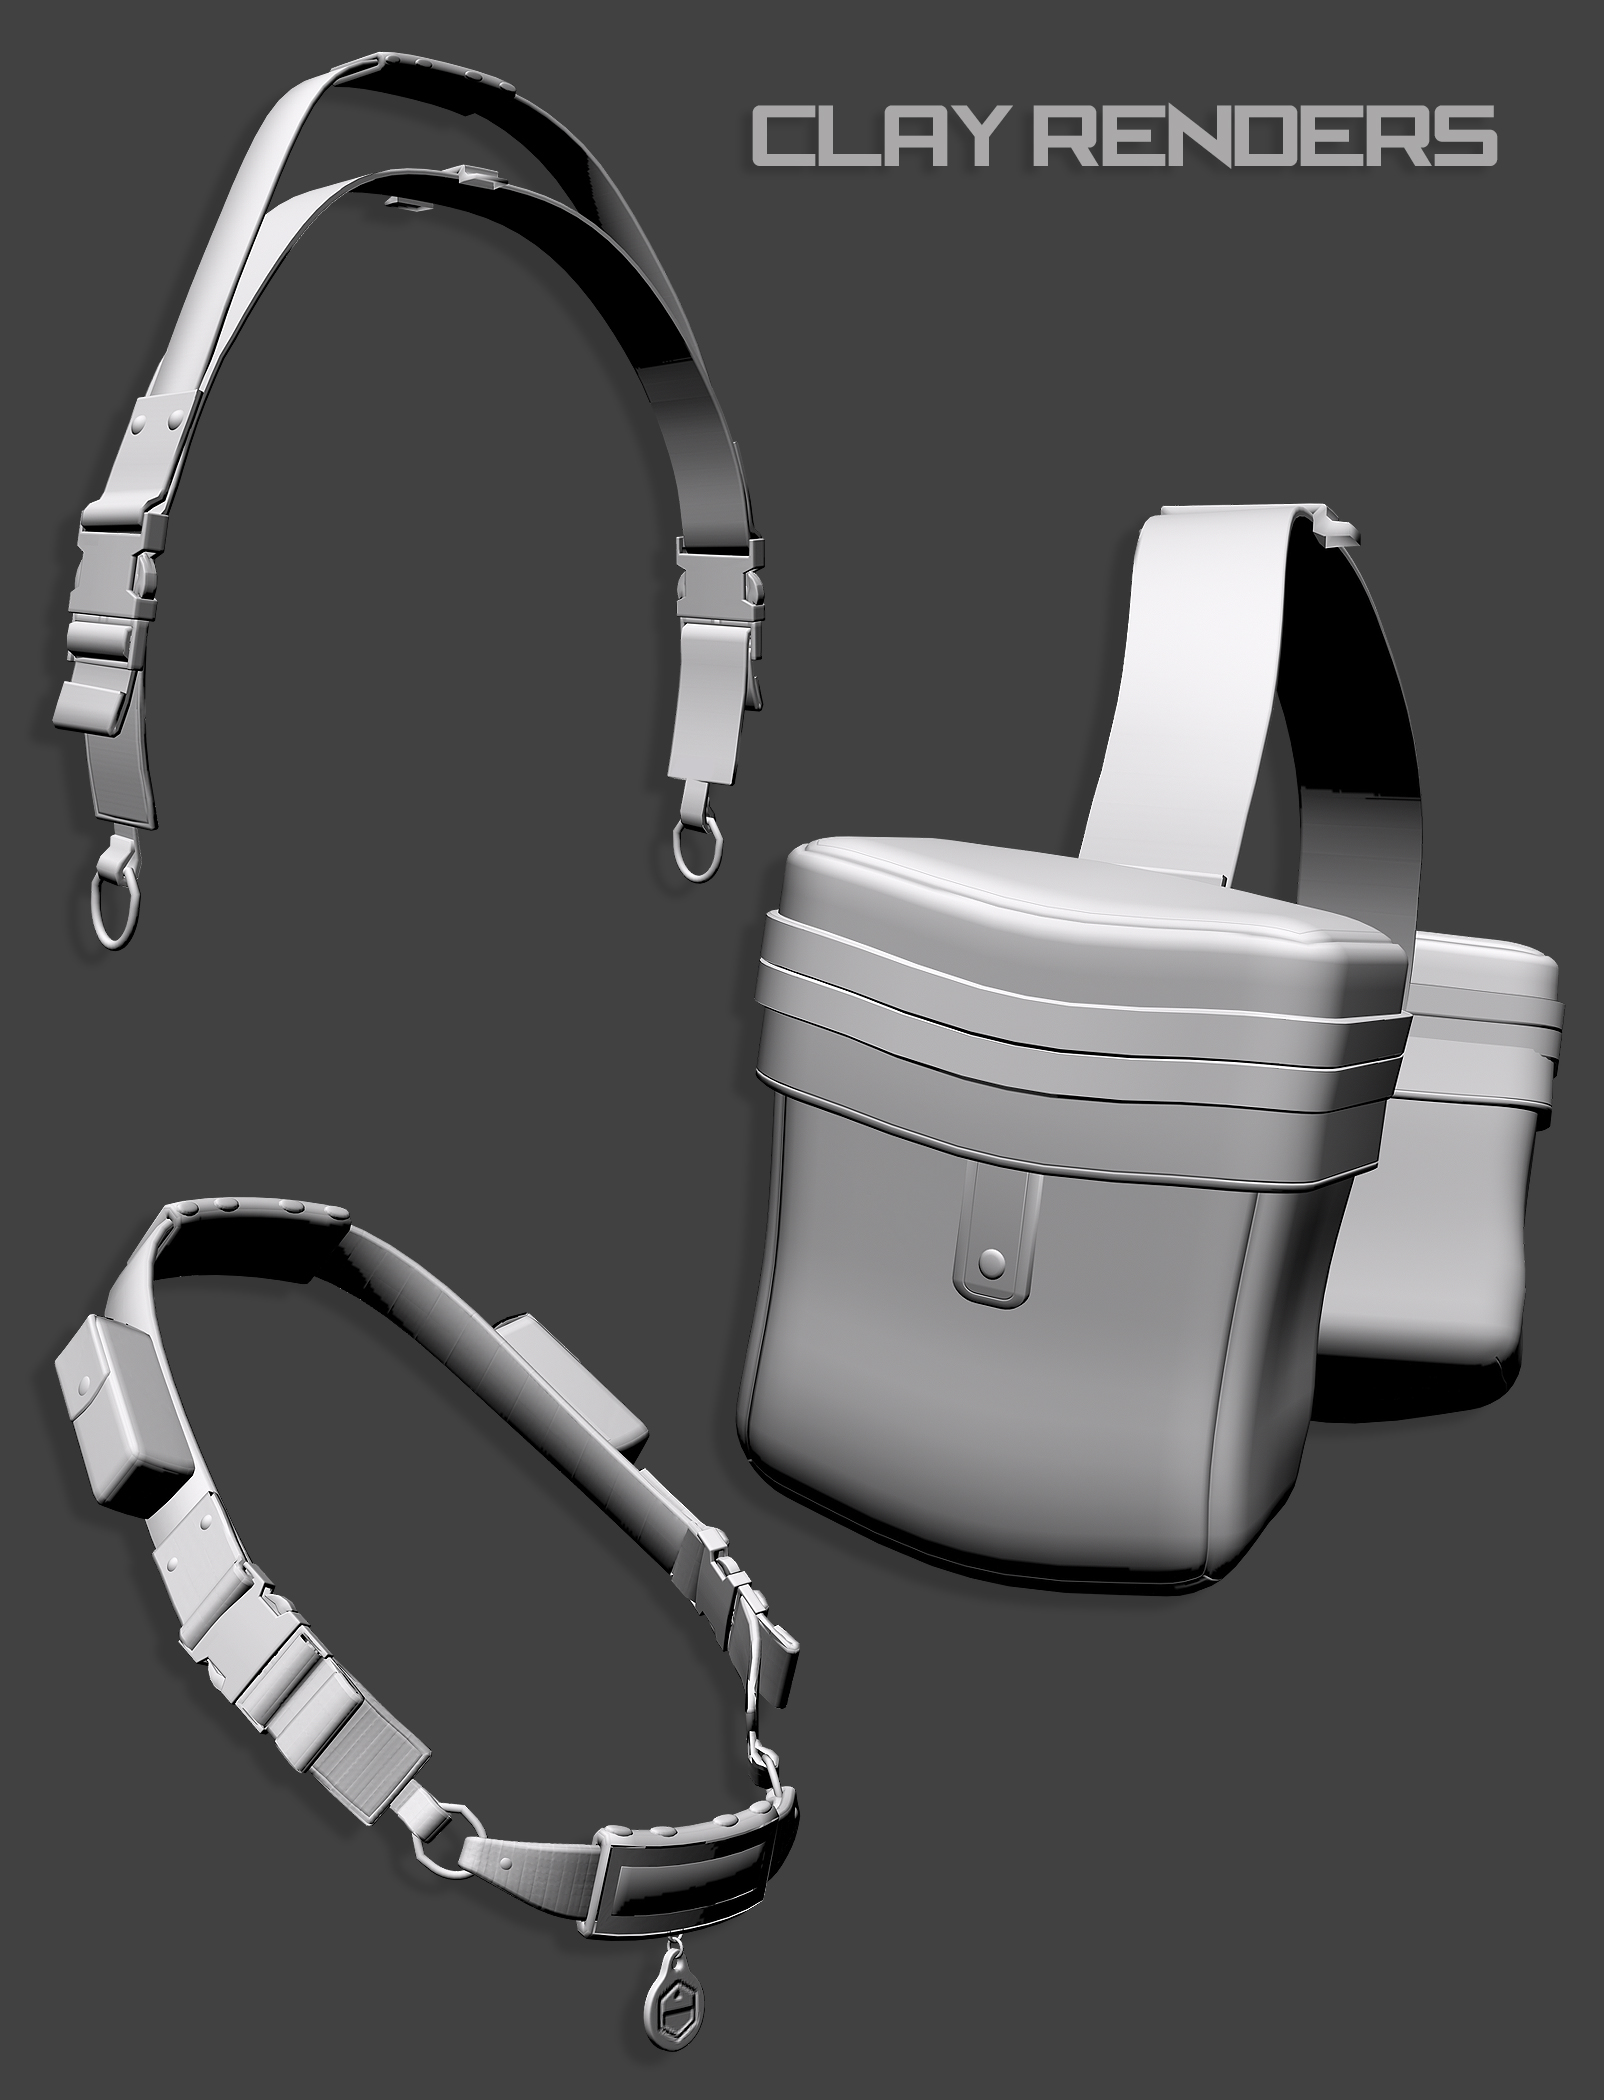 Daz Dog 8 Service Vest by: The AntFarm, 3D Models by Daz 3D